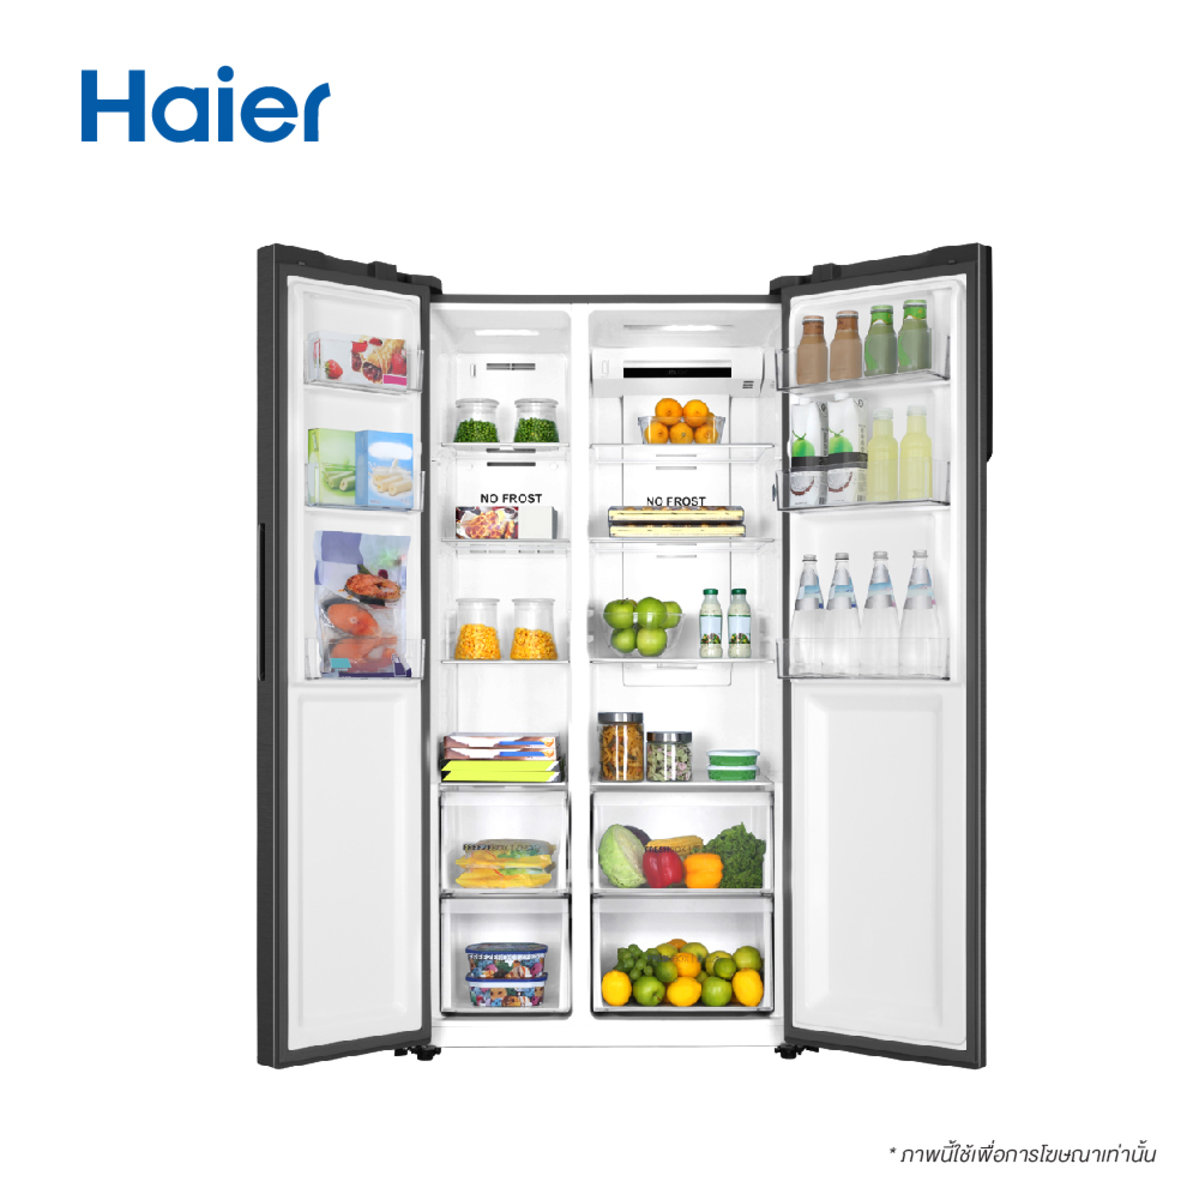 Холодильник side by side haier hrf. HRF-541dm7ru холодильник. Холодильник (Side-by-Side) Haier HRF-541dm7ru. Холодильник Haier HRF-541dm7ru. Холодильник Haier HRF-541dg7ru, золотой.